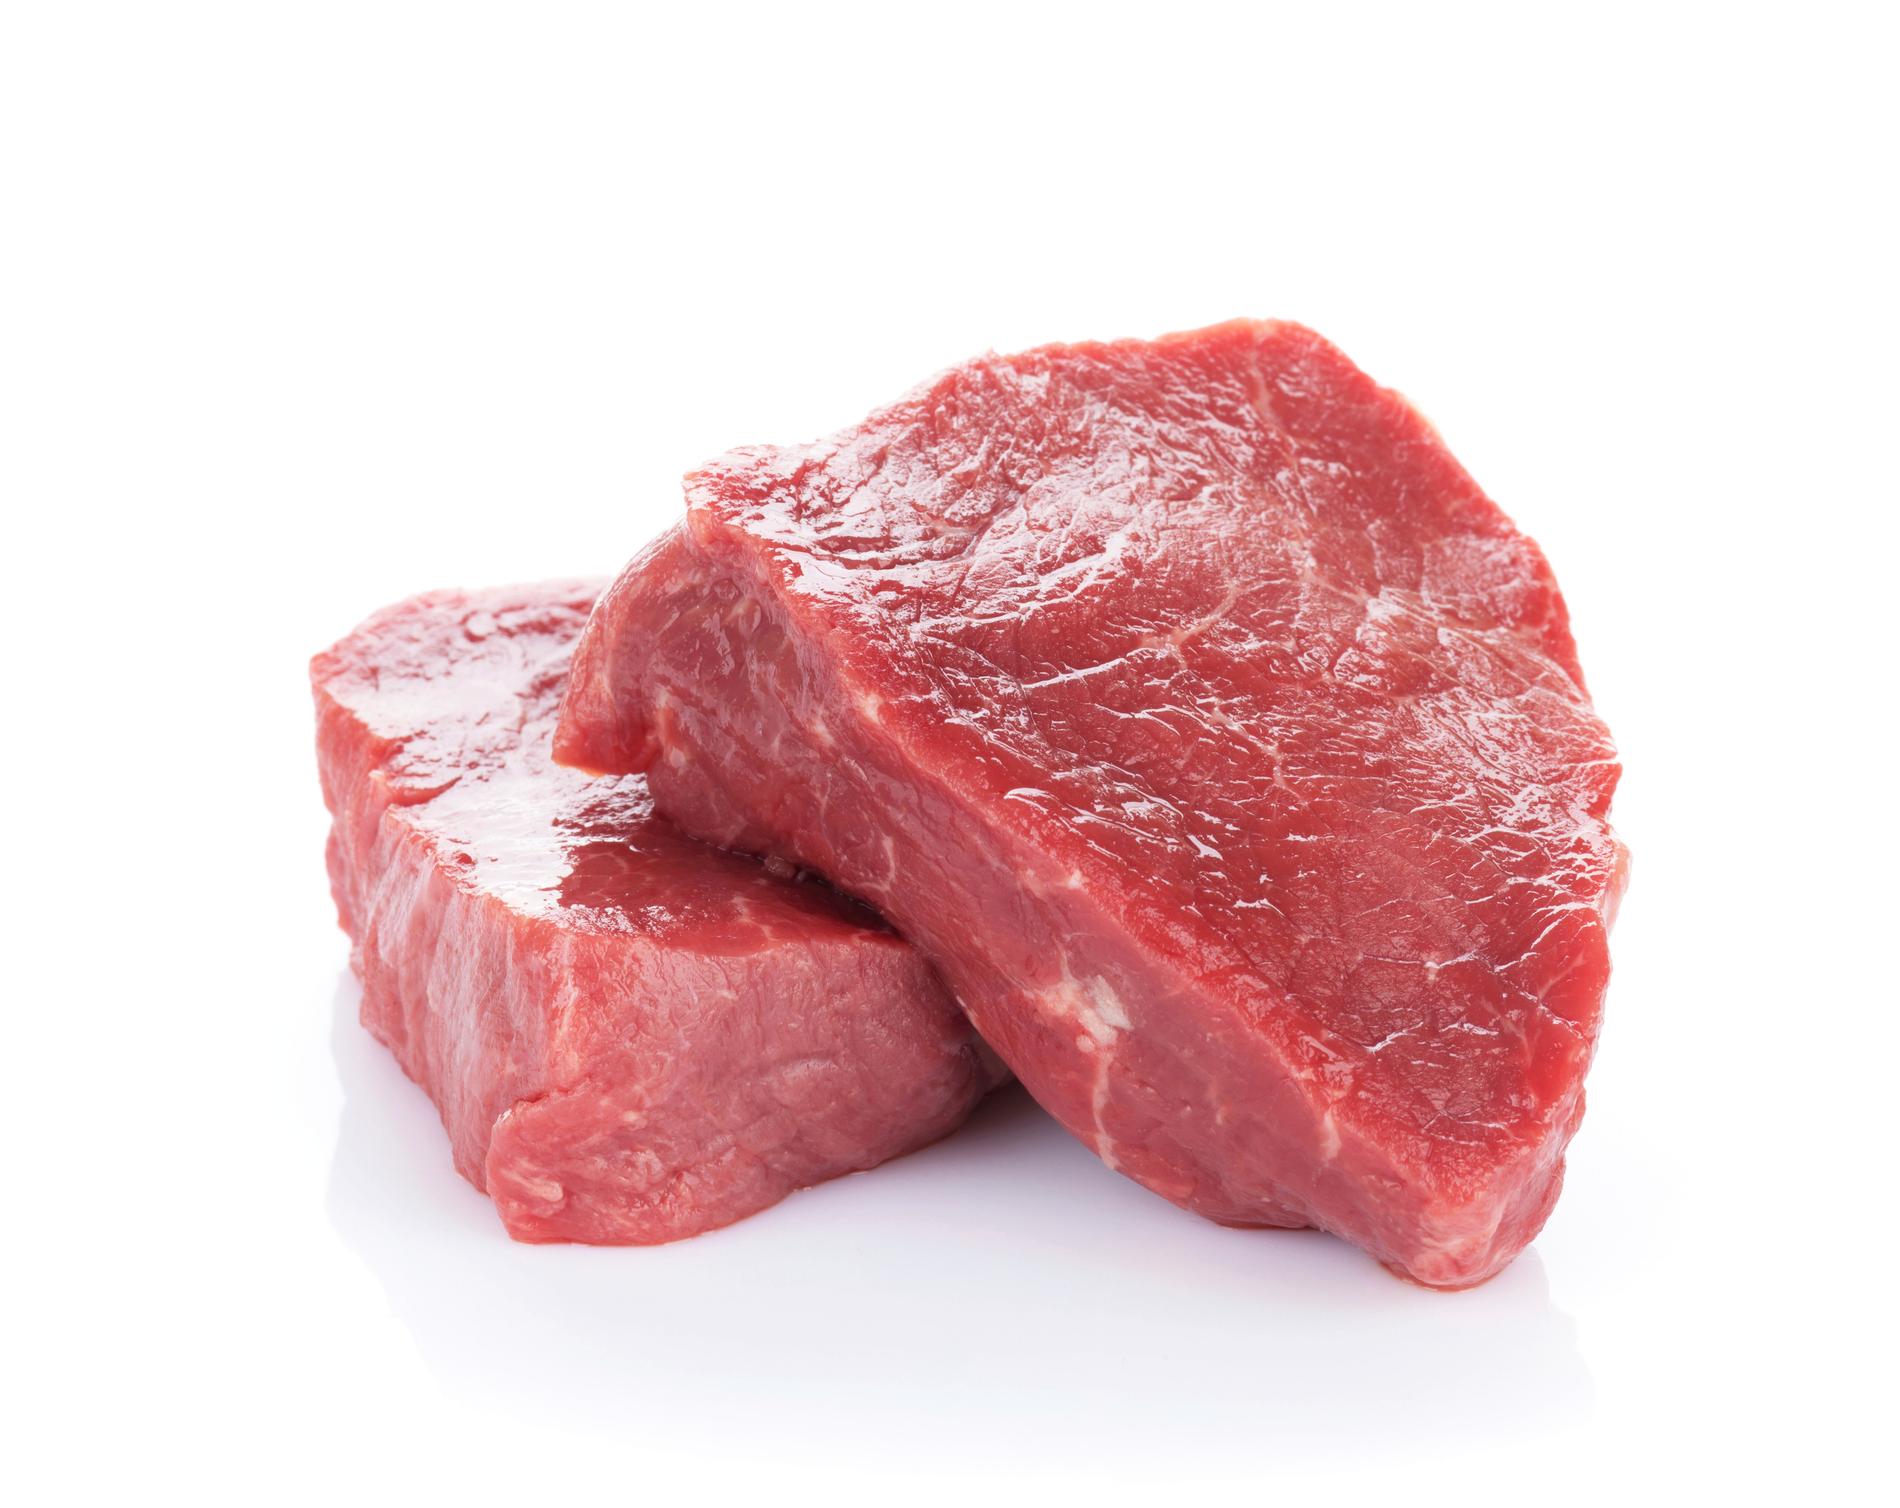 En genomgång av flera studier om faran med rött kött ifrågasätts från flera håll. Arkivbild.